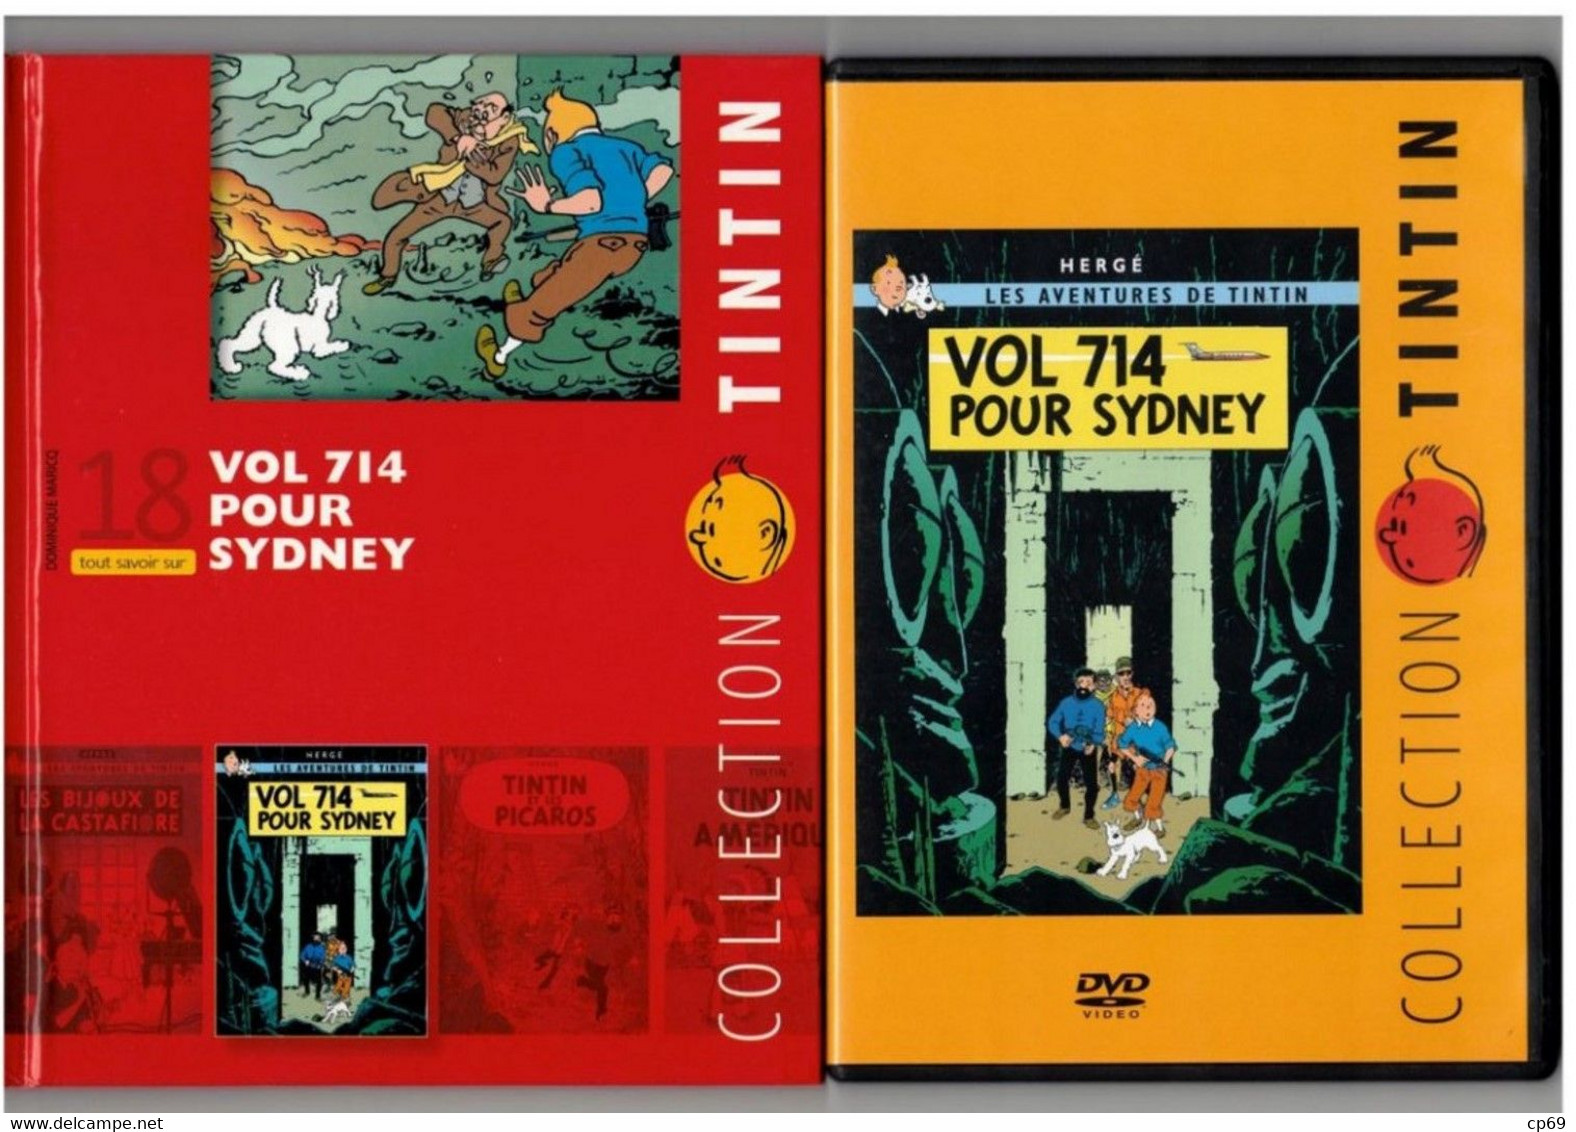 Tintin Hergé/Moulinsart 2010 Milou Chien Dog Cane Vol 714 Pour Sydney N°18 Capitaine Haddock DVD + Livret Explicatif B.E - Dessin Animé